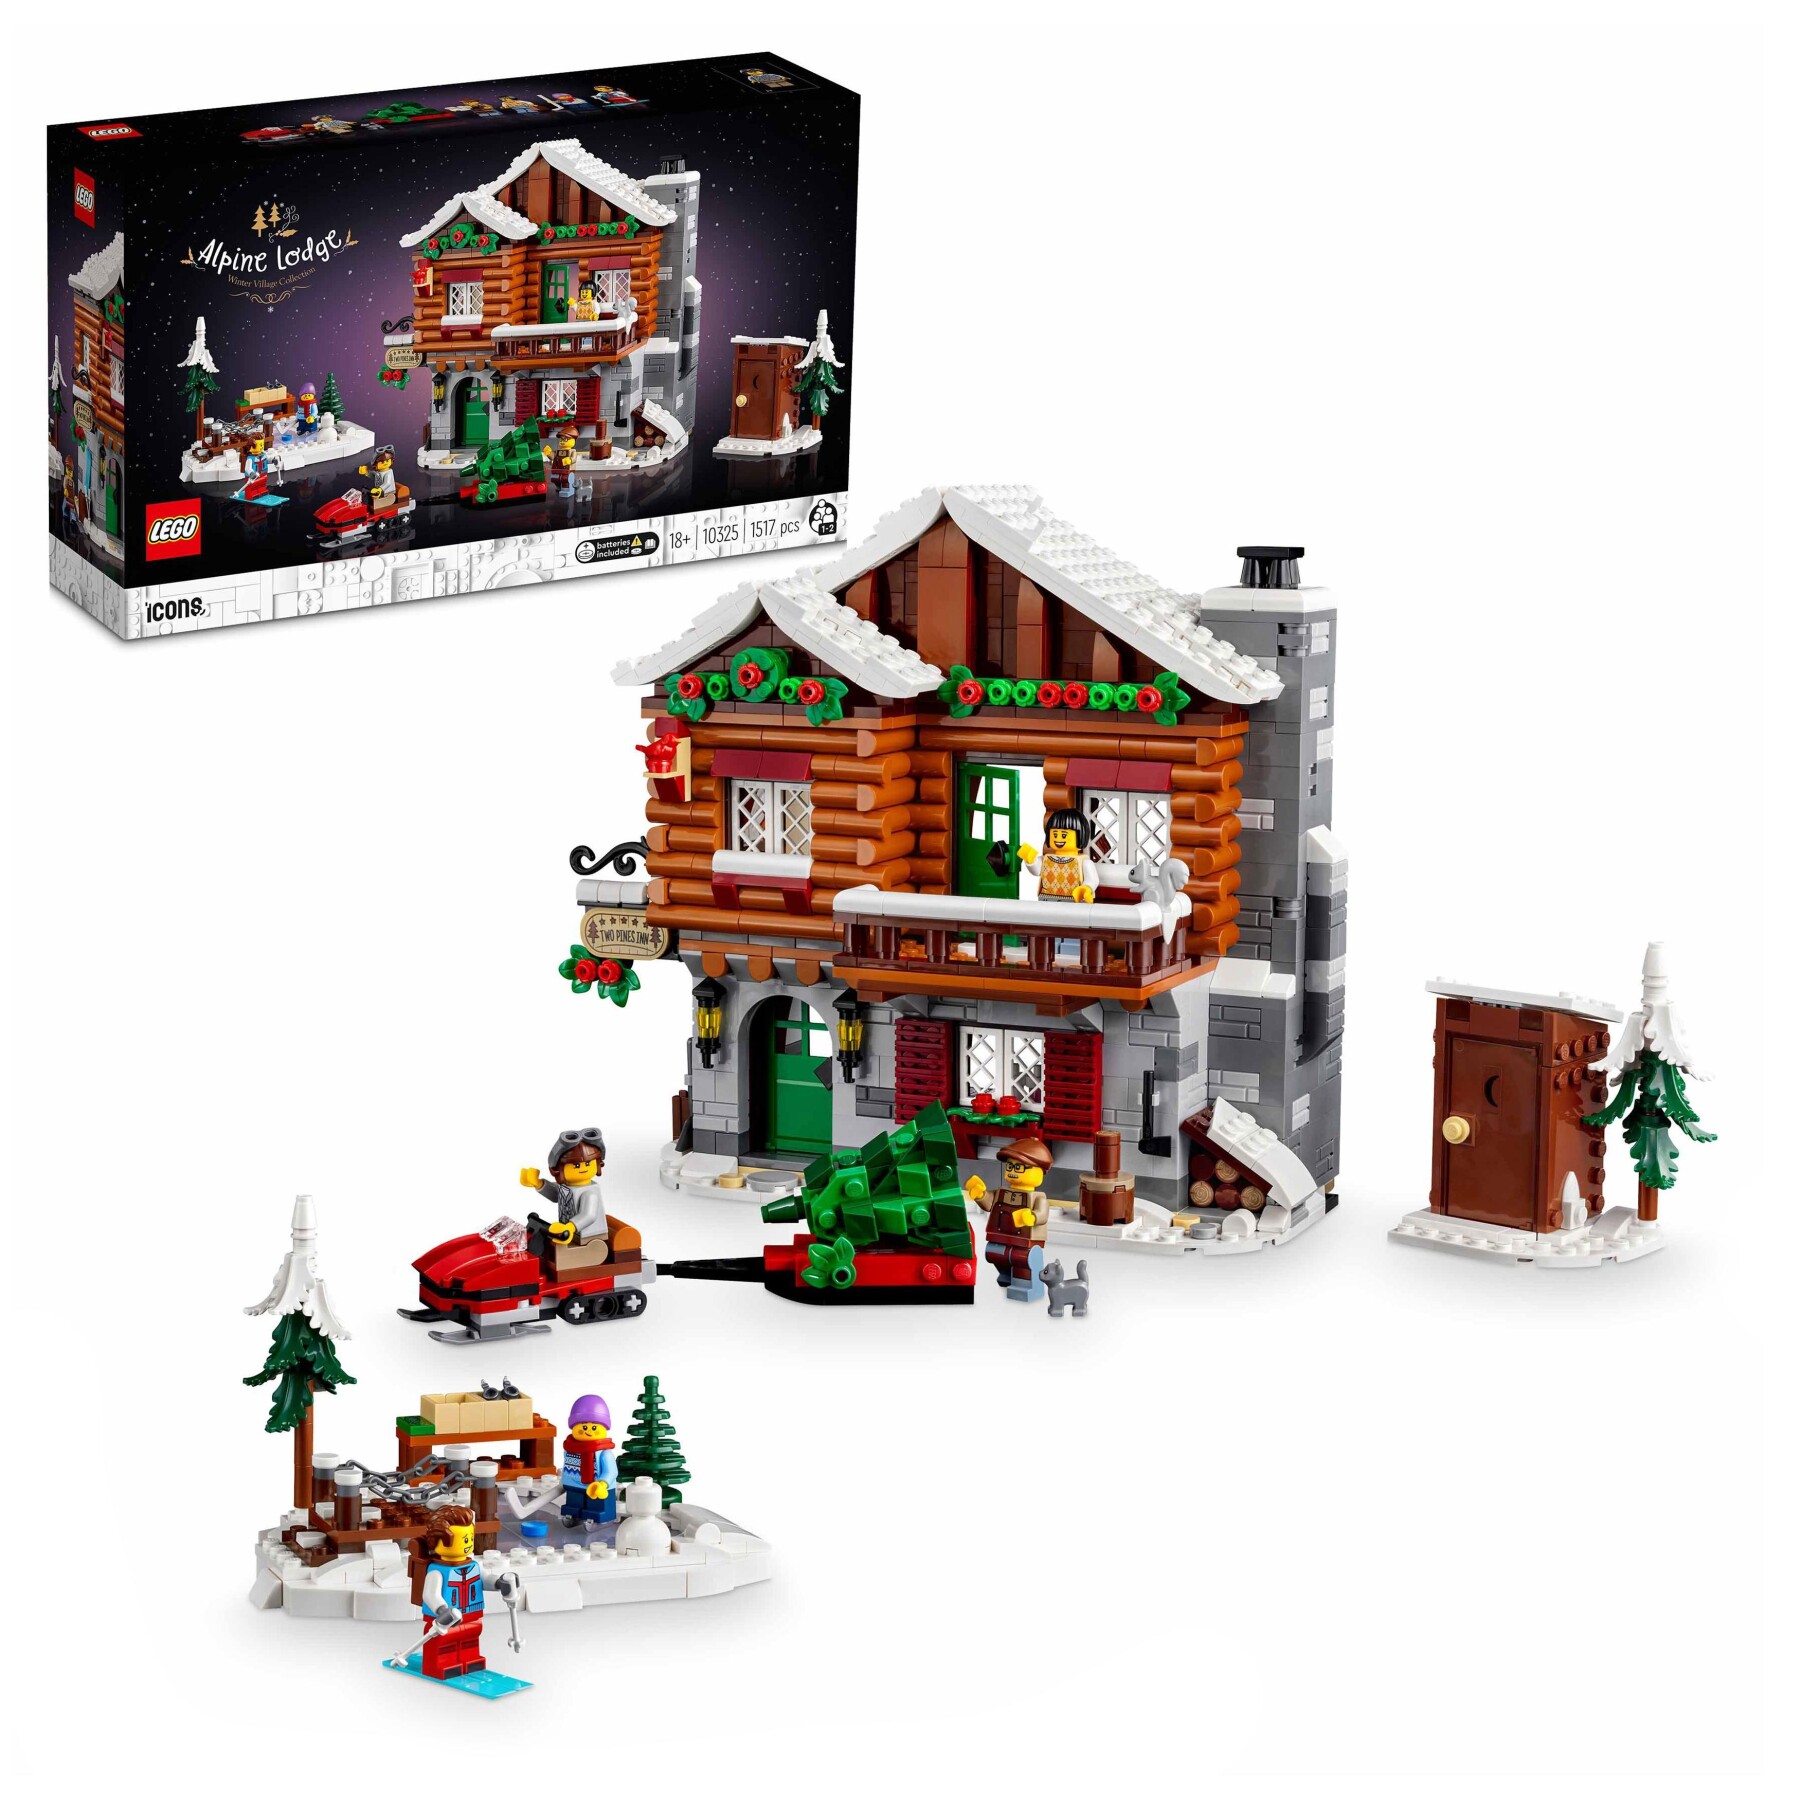 Lego icons 10325 baita alpina, modellino di casa con minifigure, modellismo da costruire per adulti, regalo per donna e uomo - Lego, LEGO ICONS